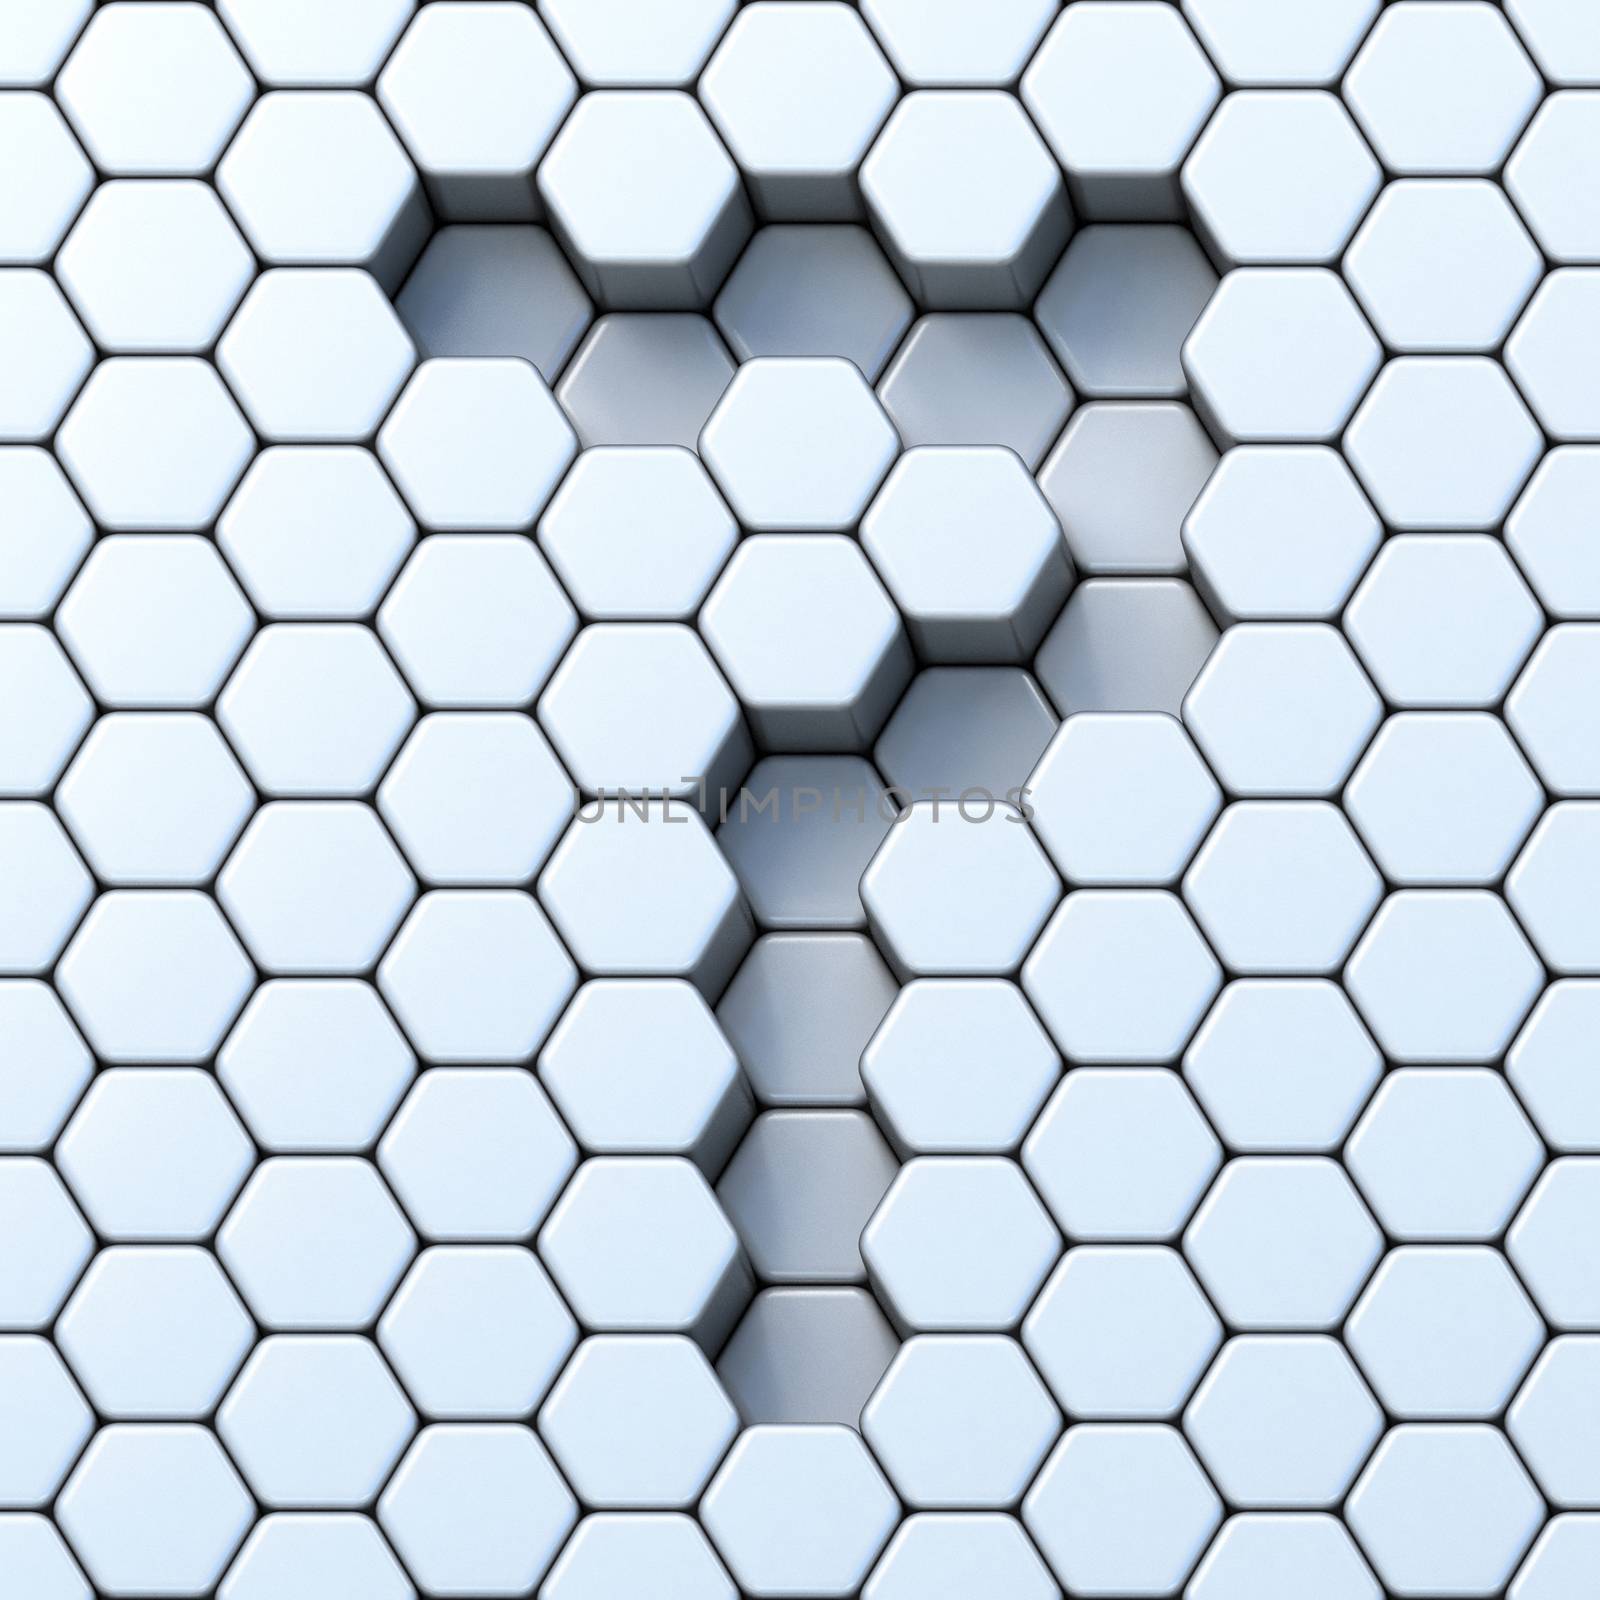 Hexagonal grid number SEVEN 7 3D render illustration